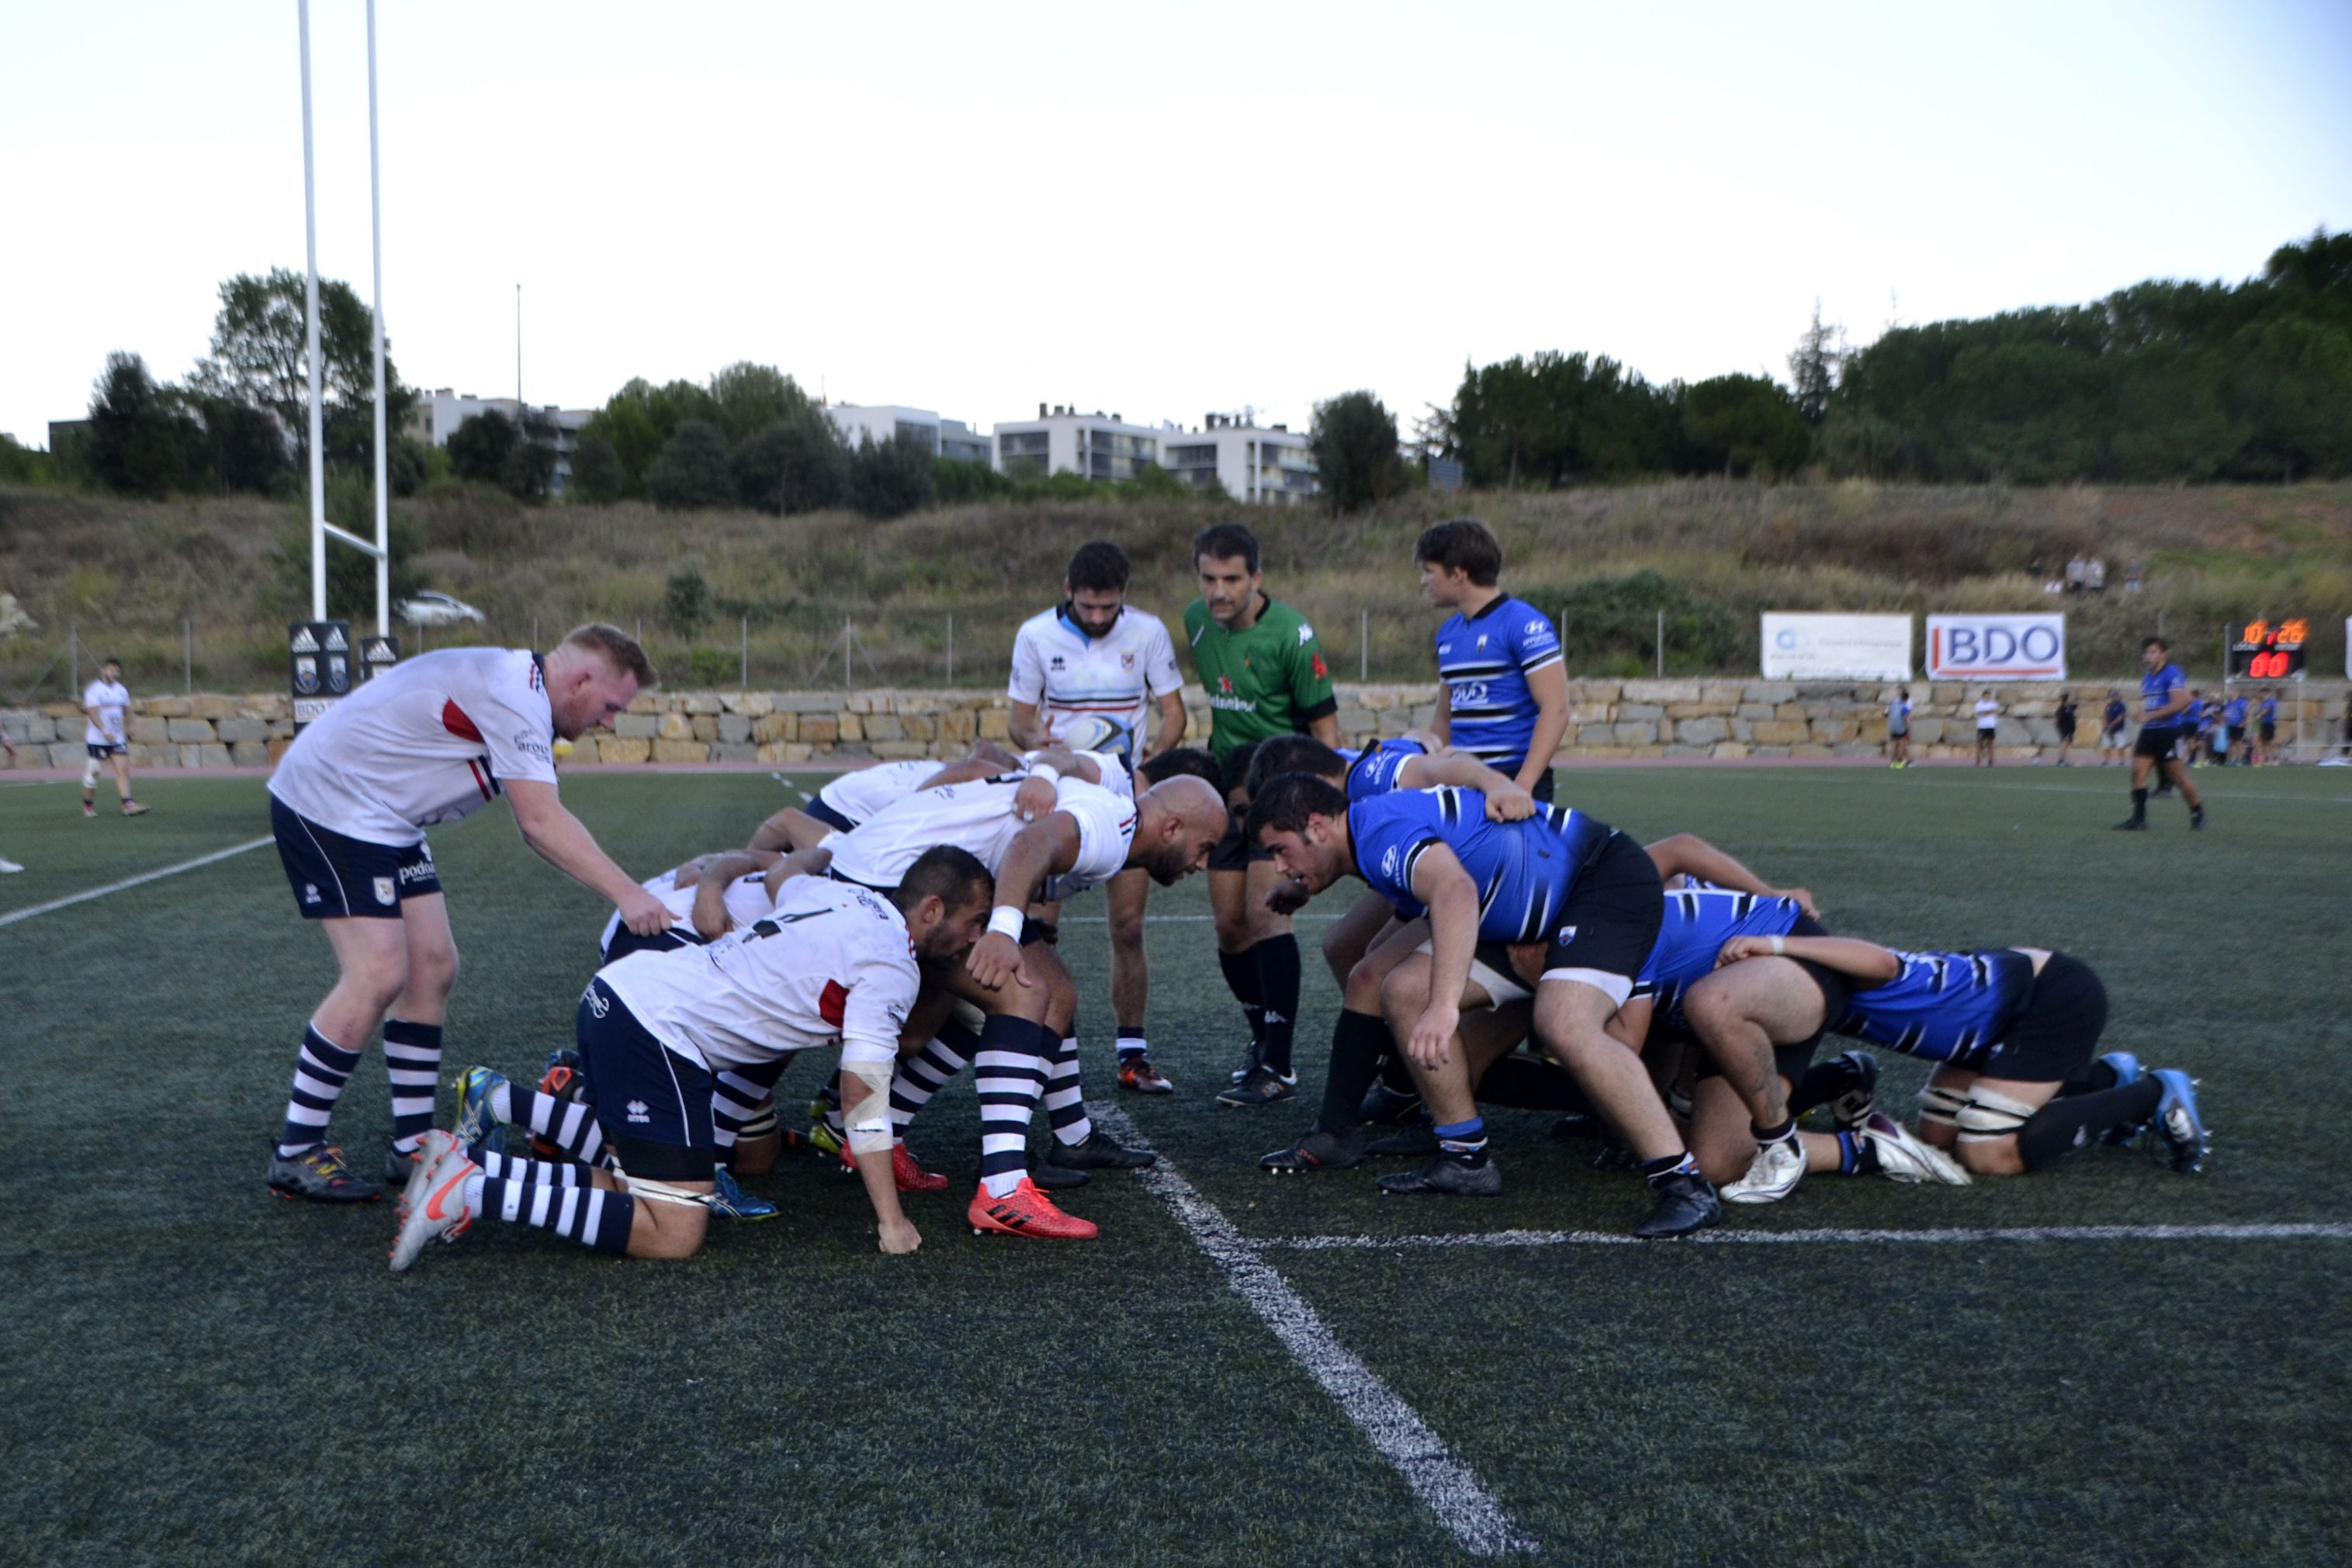 Partit de lliga de rugbi masculí CR Sant Cugat - Bantierra Fénix Zaragoza. FOTO: Marcel Marsal